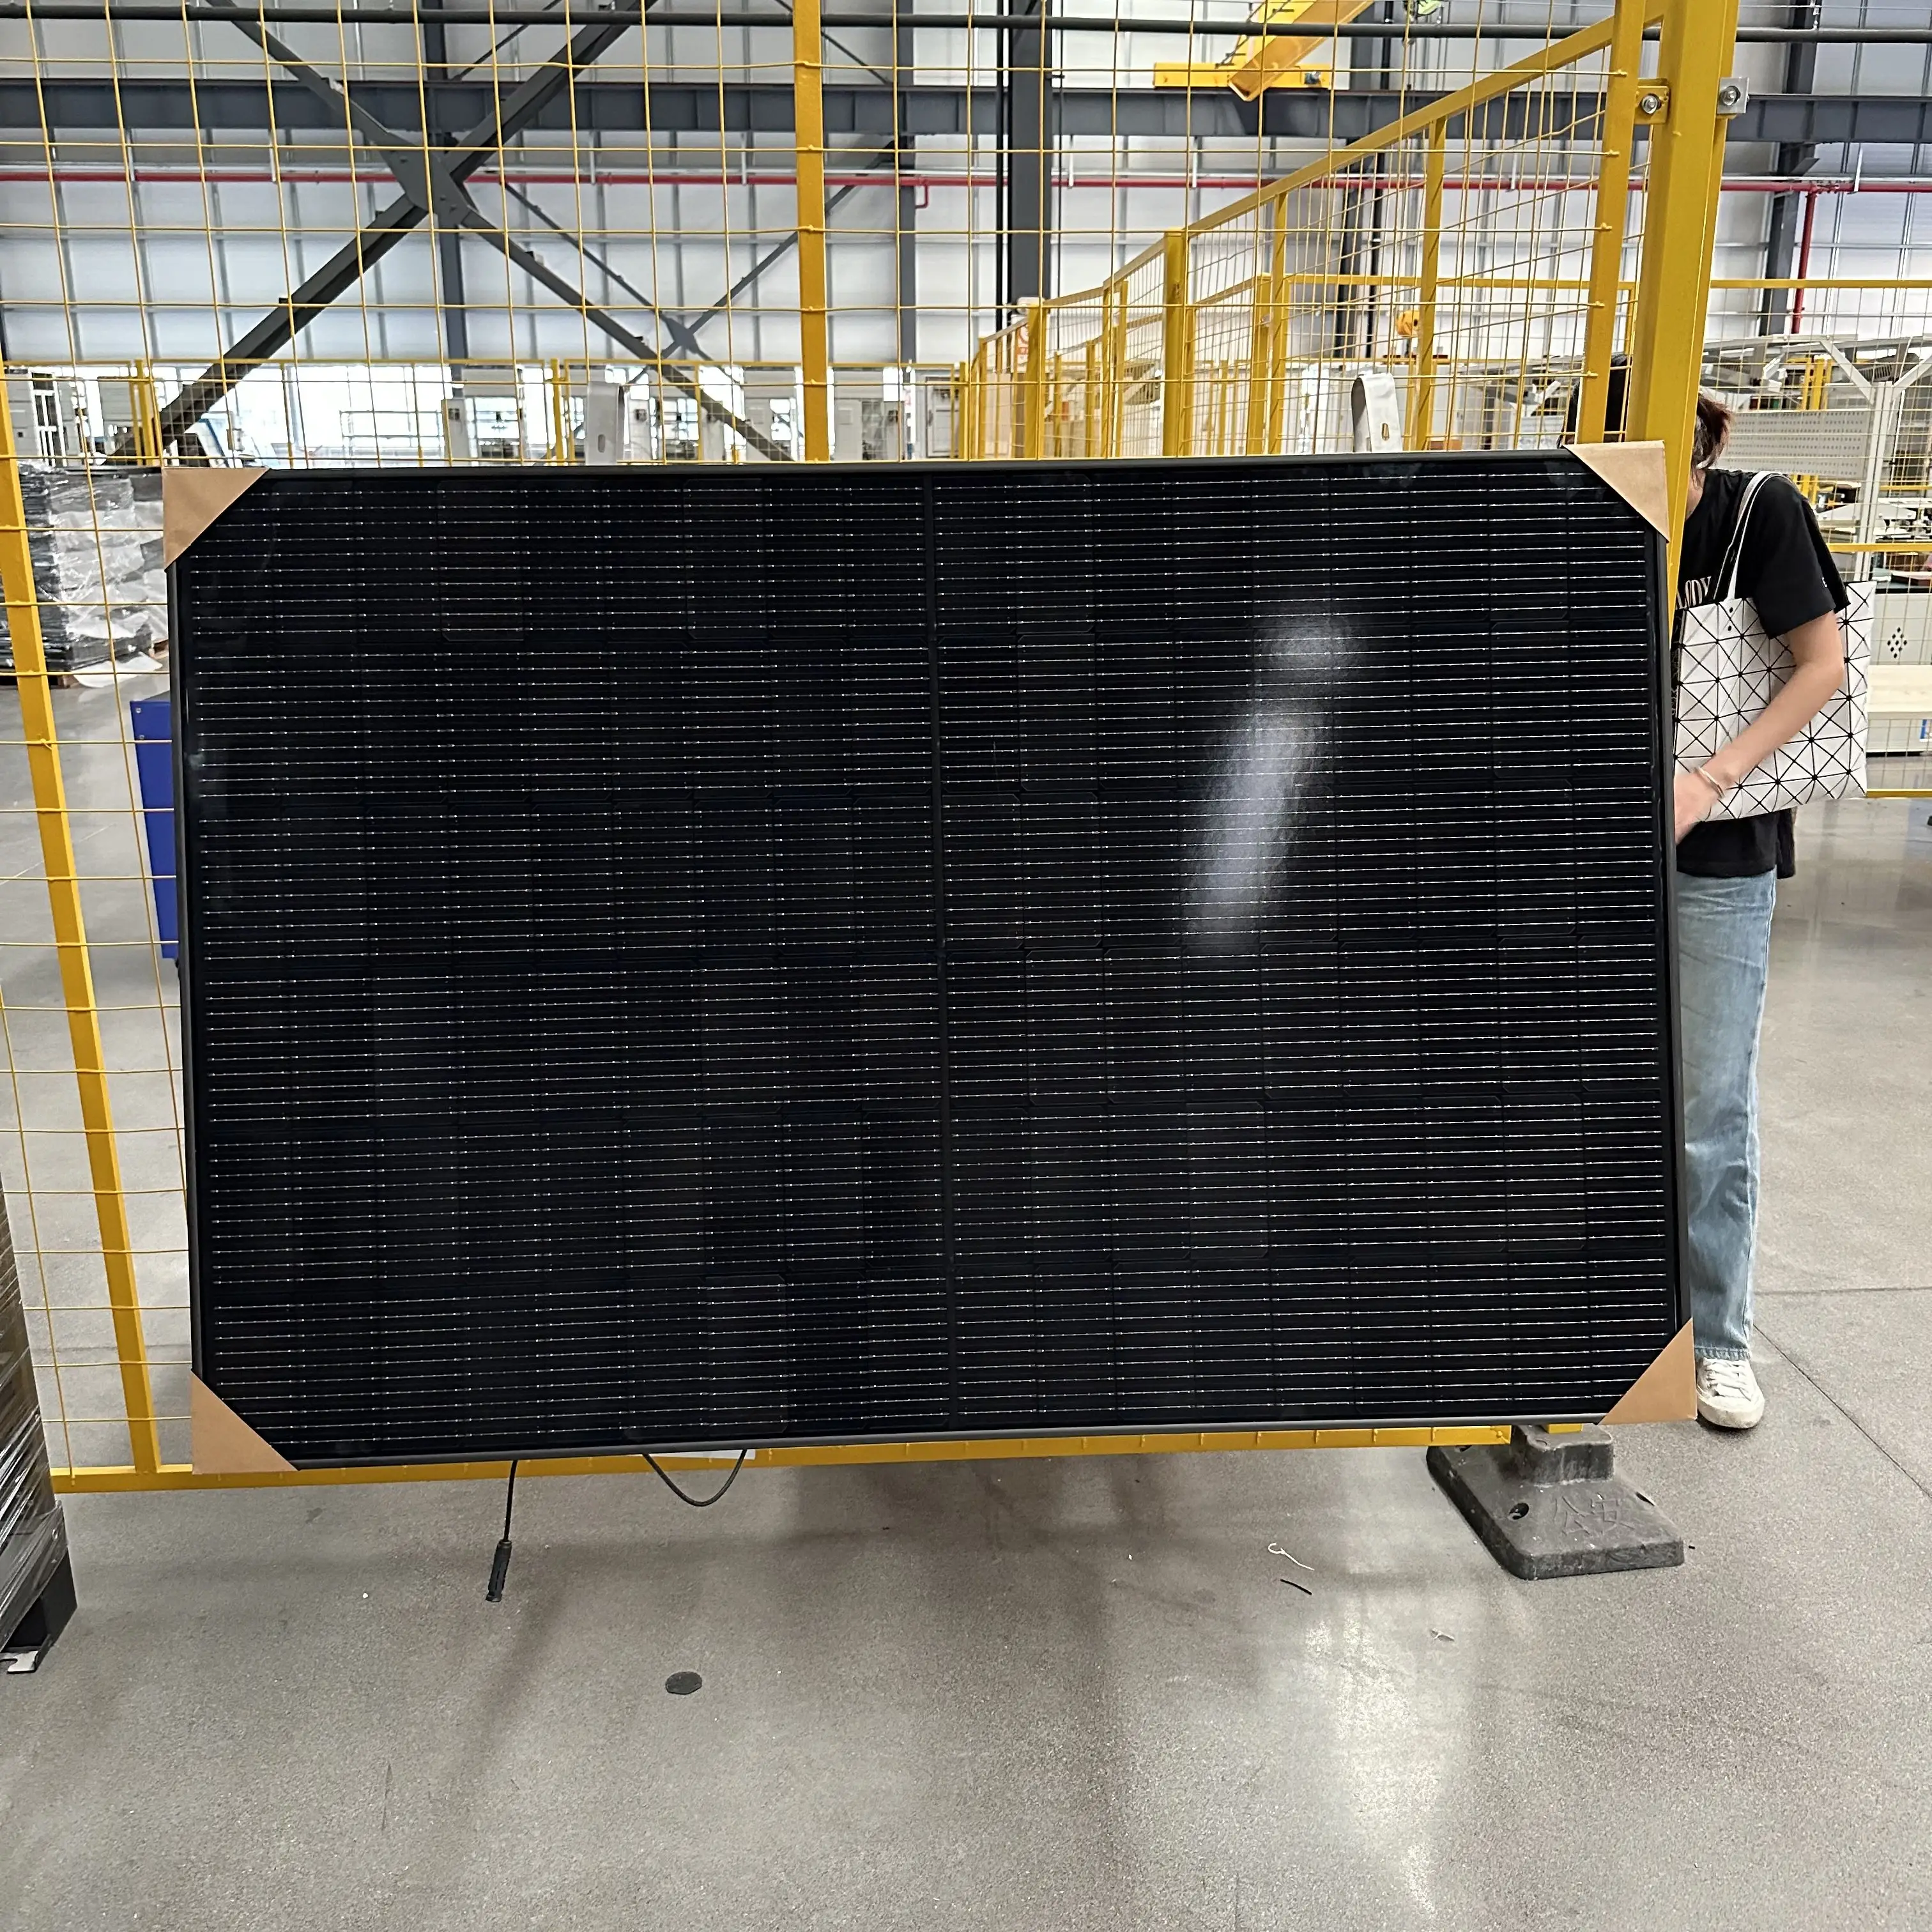 وحدات طاقة شمسية Longi في مخزن الاتحاد الأوروبي لوحات طاقة شمسية وحيدة بقدرة 540 وات 545 وات 550 وات 555 وات لوحات طاقة شمسية وفوتوضوئية متوفرة بقدرة 550 وات